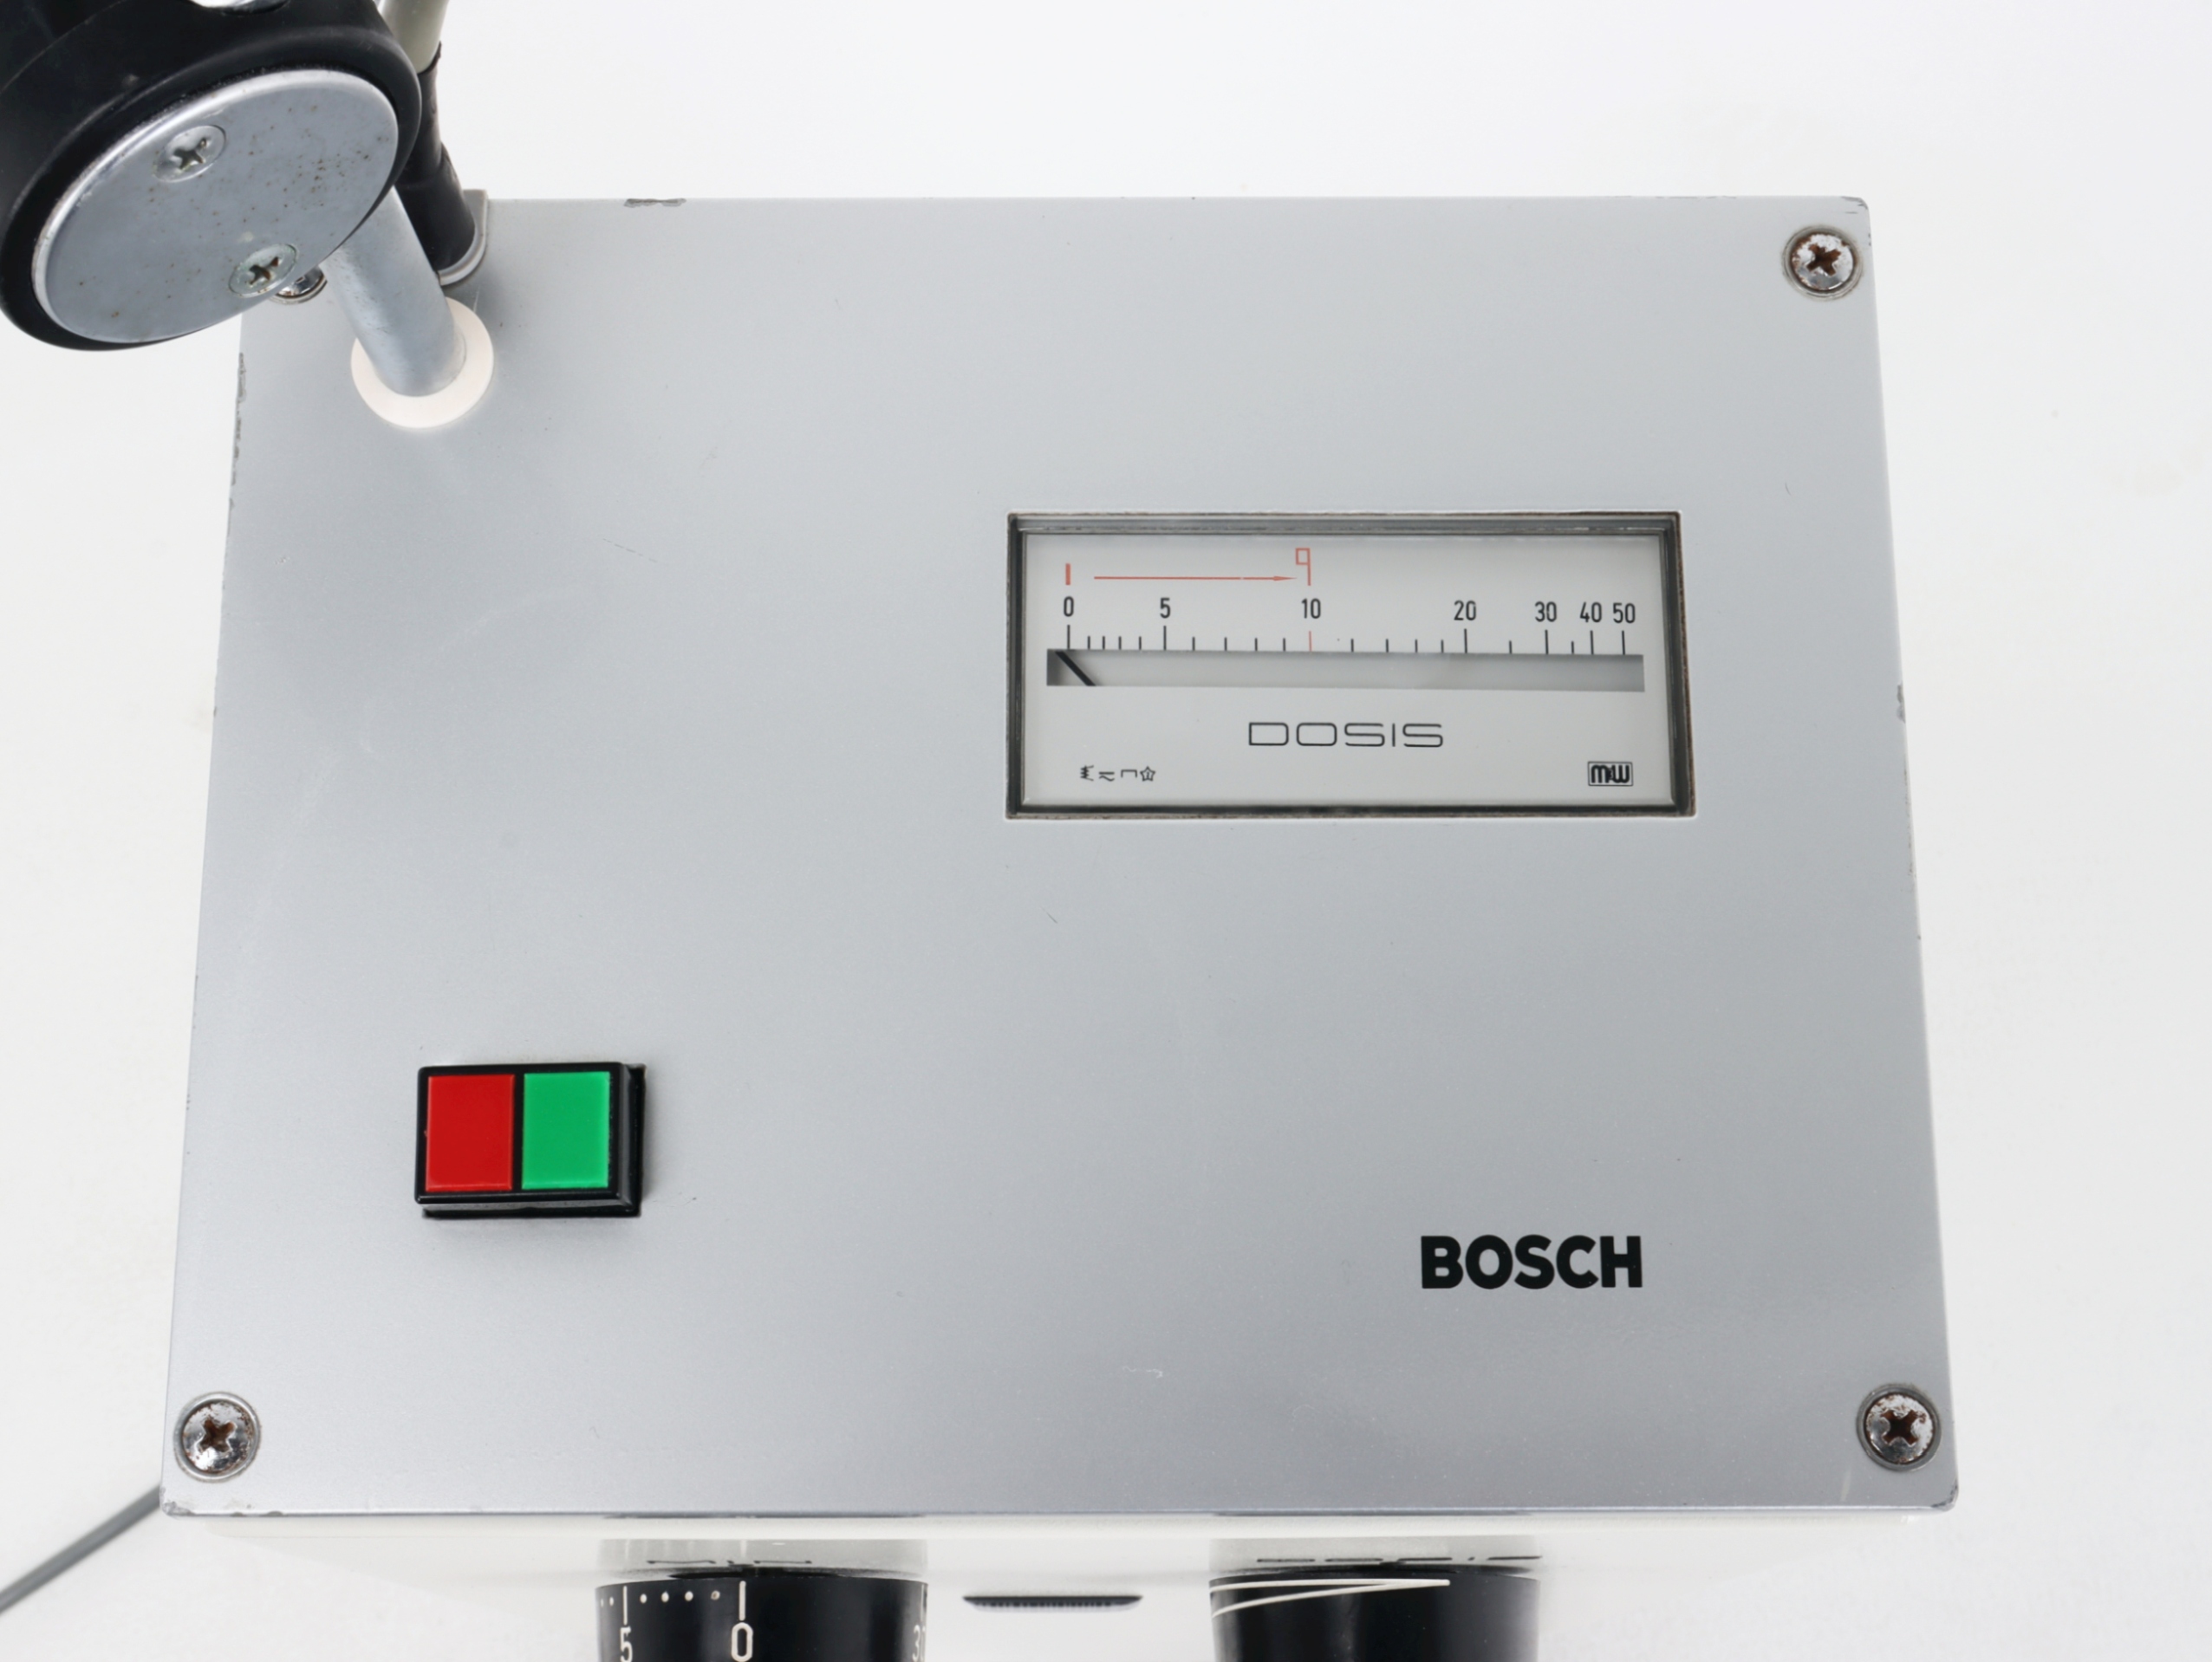 Diatermie mikrofalowe używane B/D Bosch Radarmed 12 S 50 - Praiston rekondycjonowany